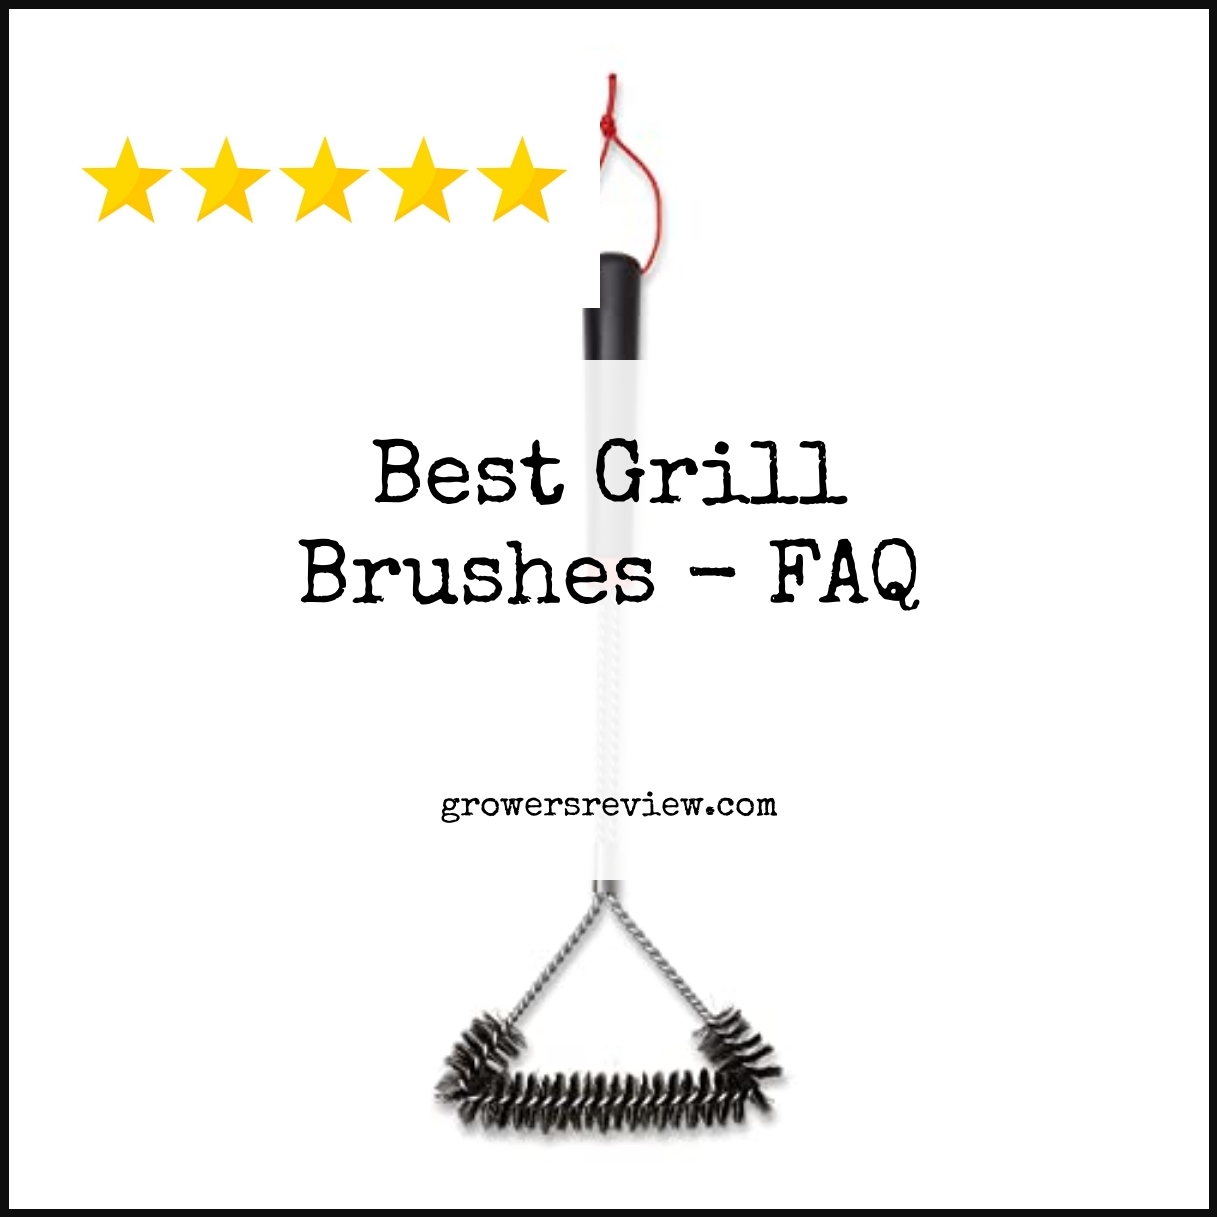 Best Grill Brushes - FAQ